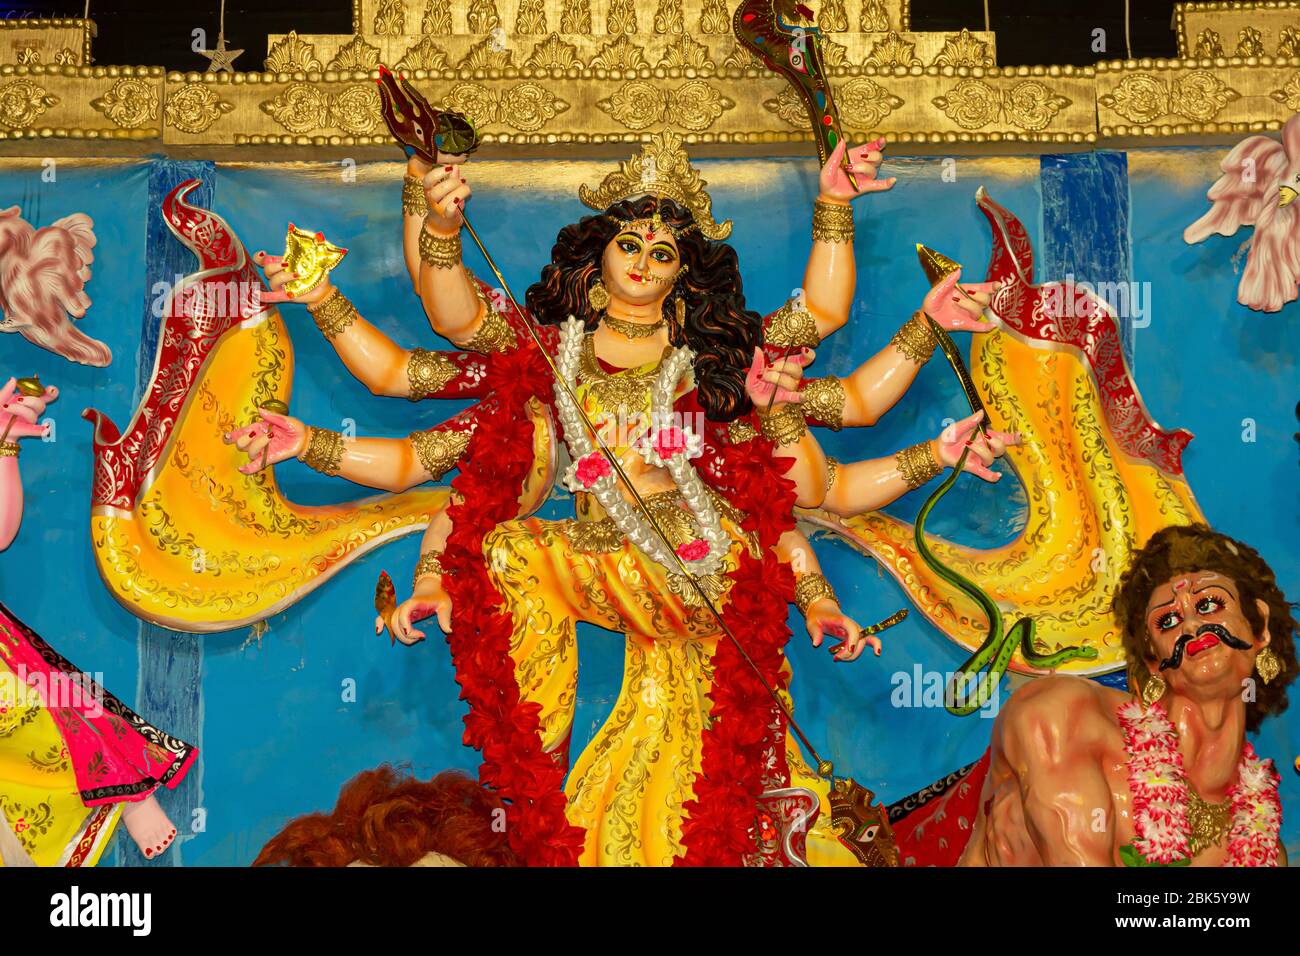 goddess durga on lion banque d image et photos alamy